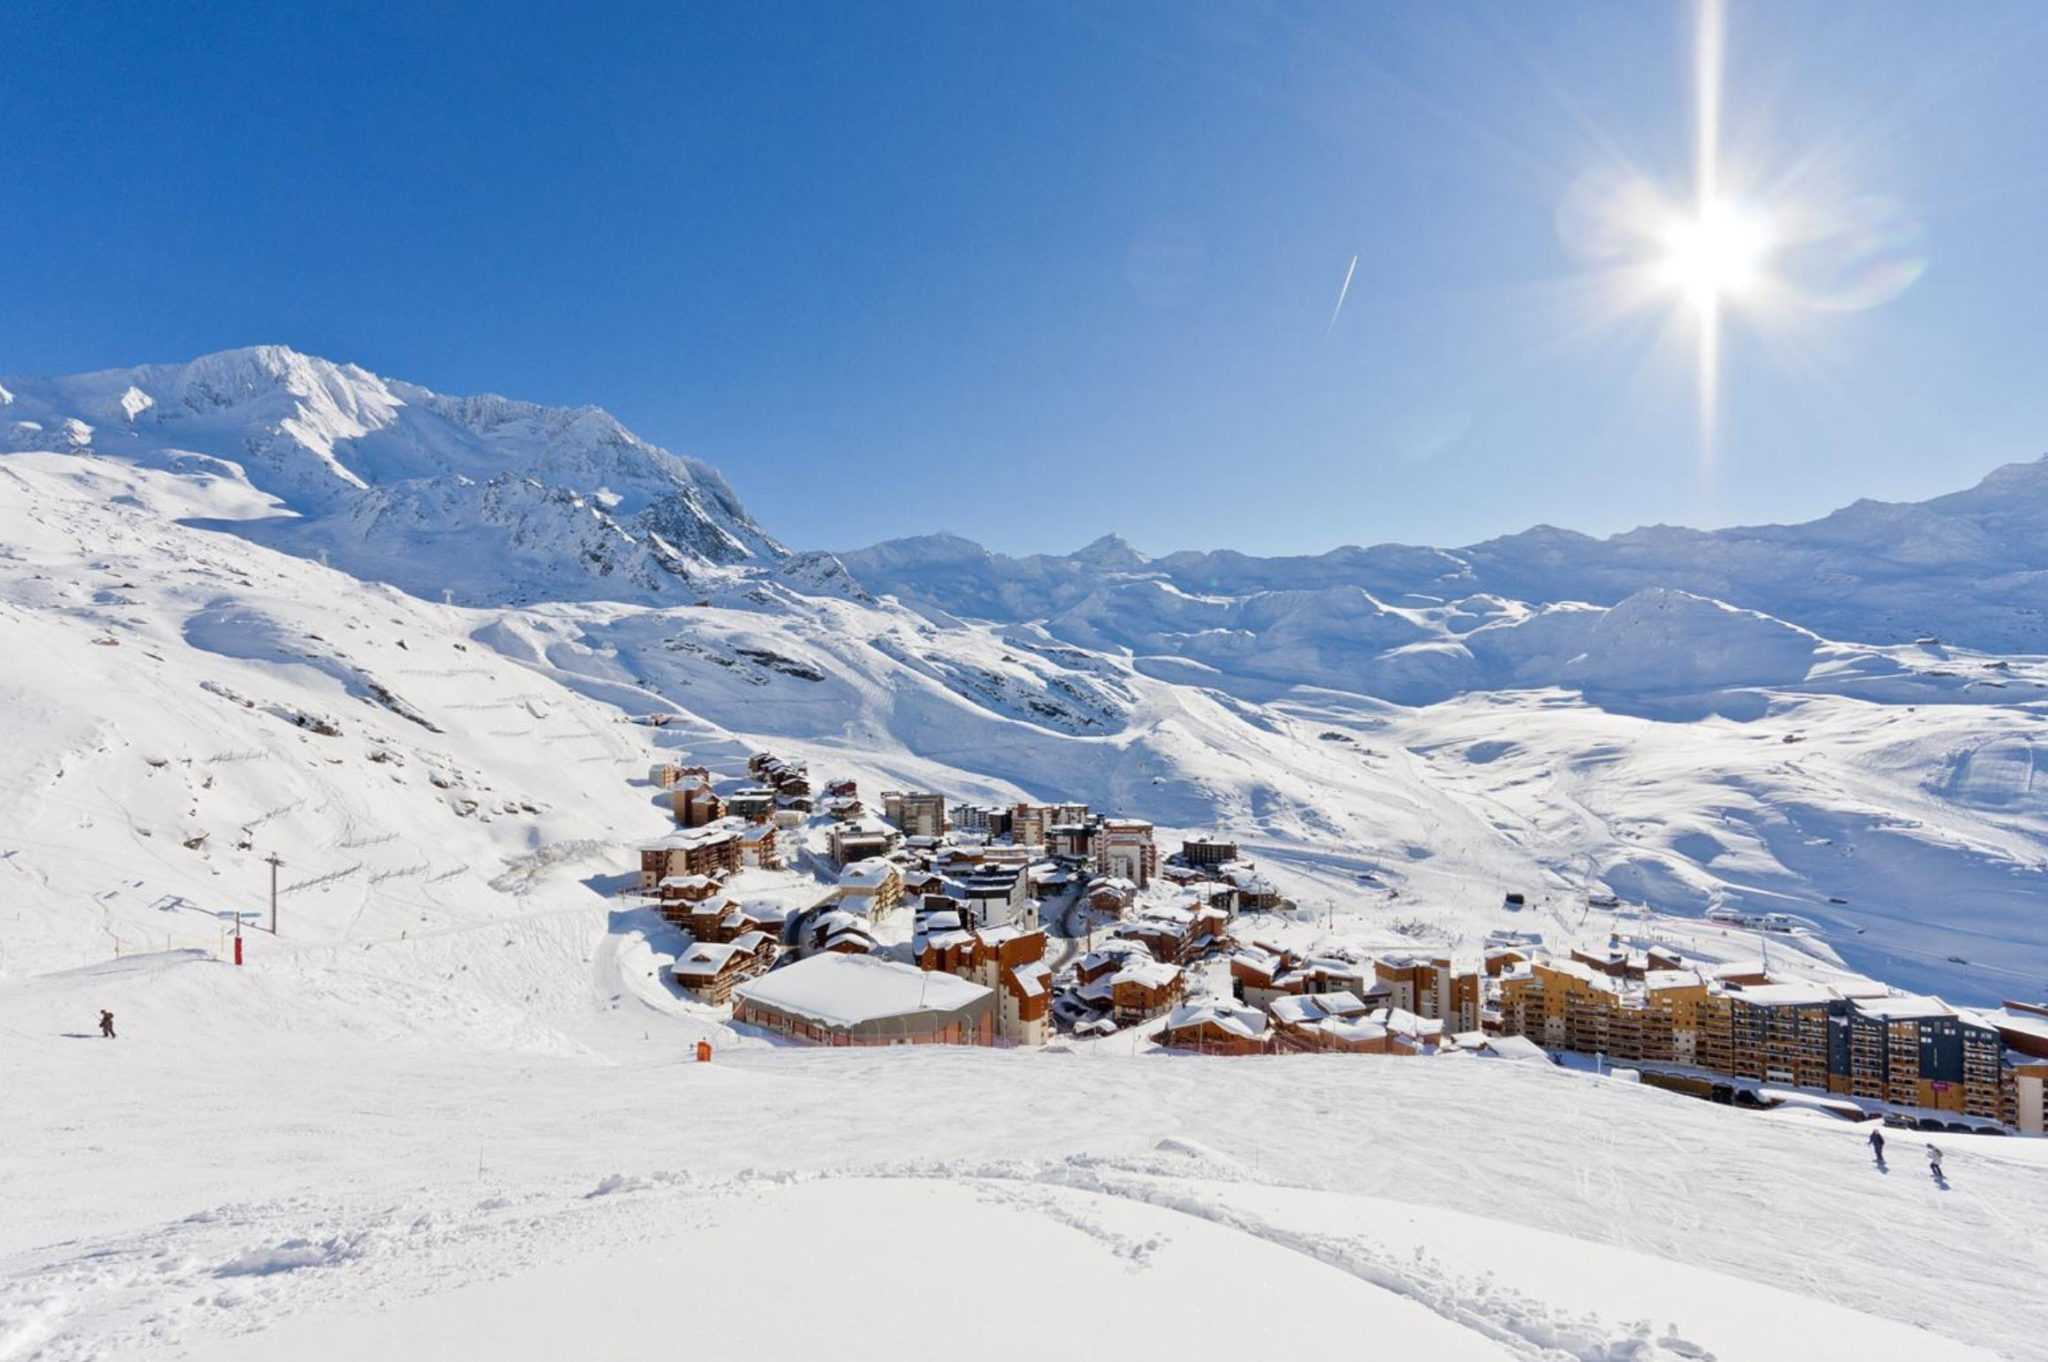 Обзор бюджетных горнолыжных курортов Европы Рейтинг по цене Где можно недорого покататься на доске и на лыжах недорого Лучшие варианты Австрии, Франции, Финляндии, Италии, Германии, Норвегии и других стран